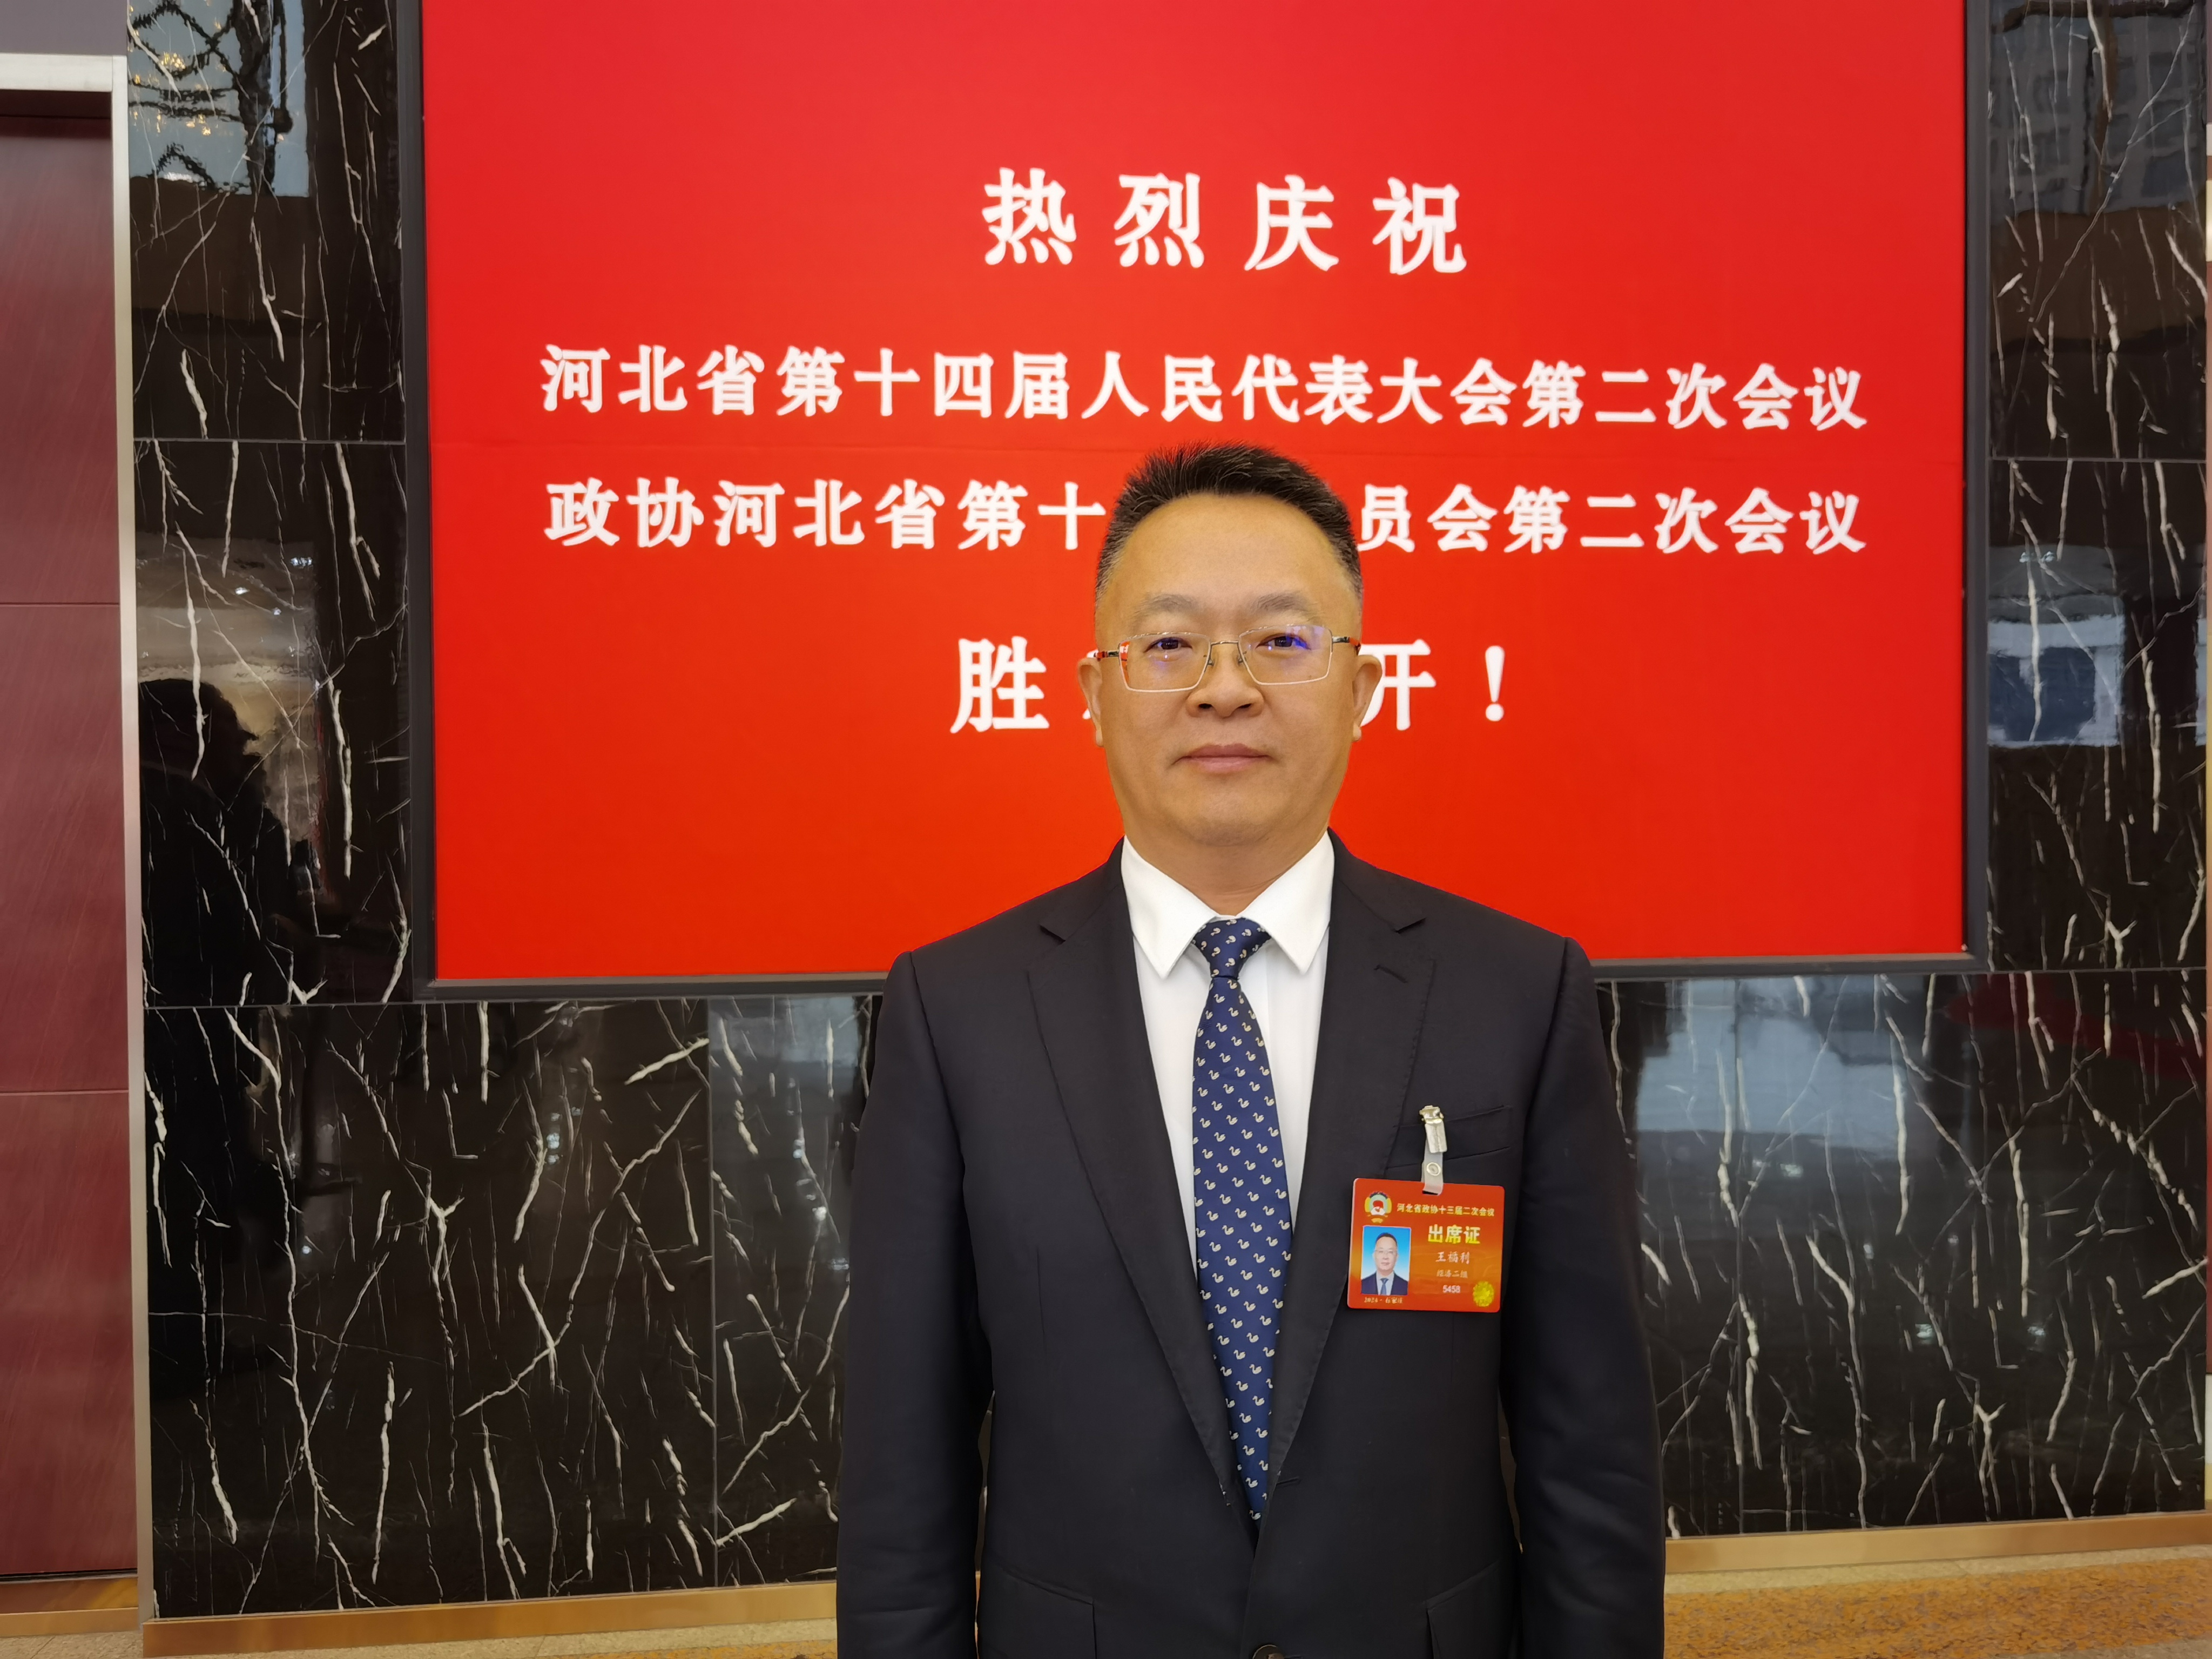 河北省政协委员、中国农业发展银行河北省分行行长王福利接受采访